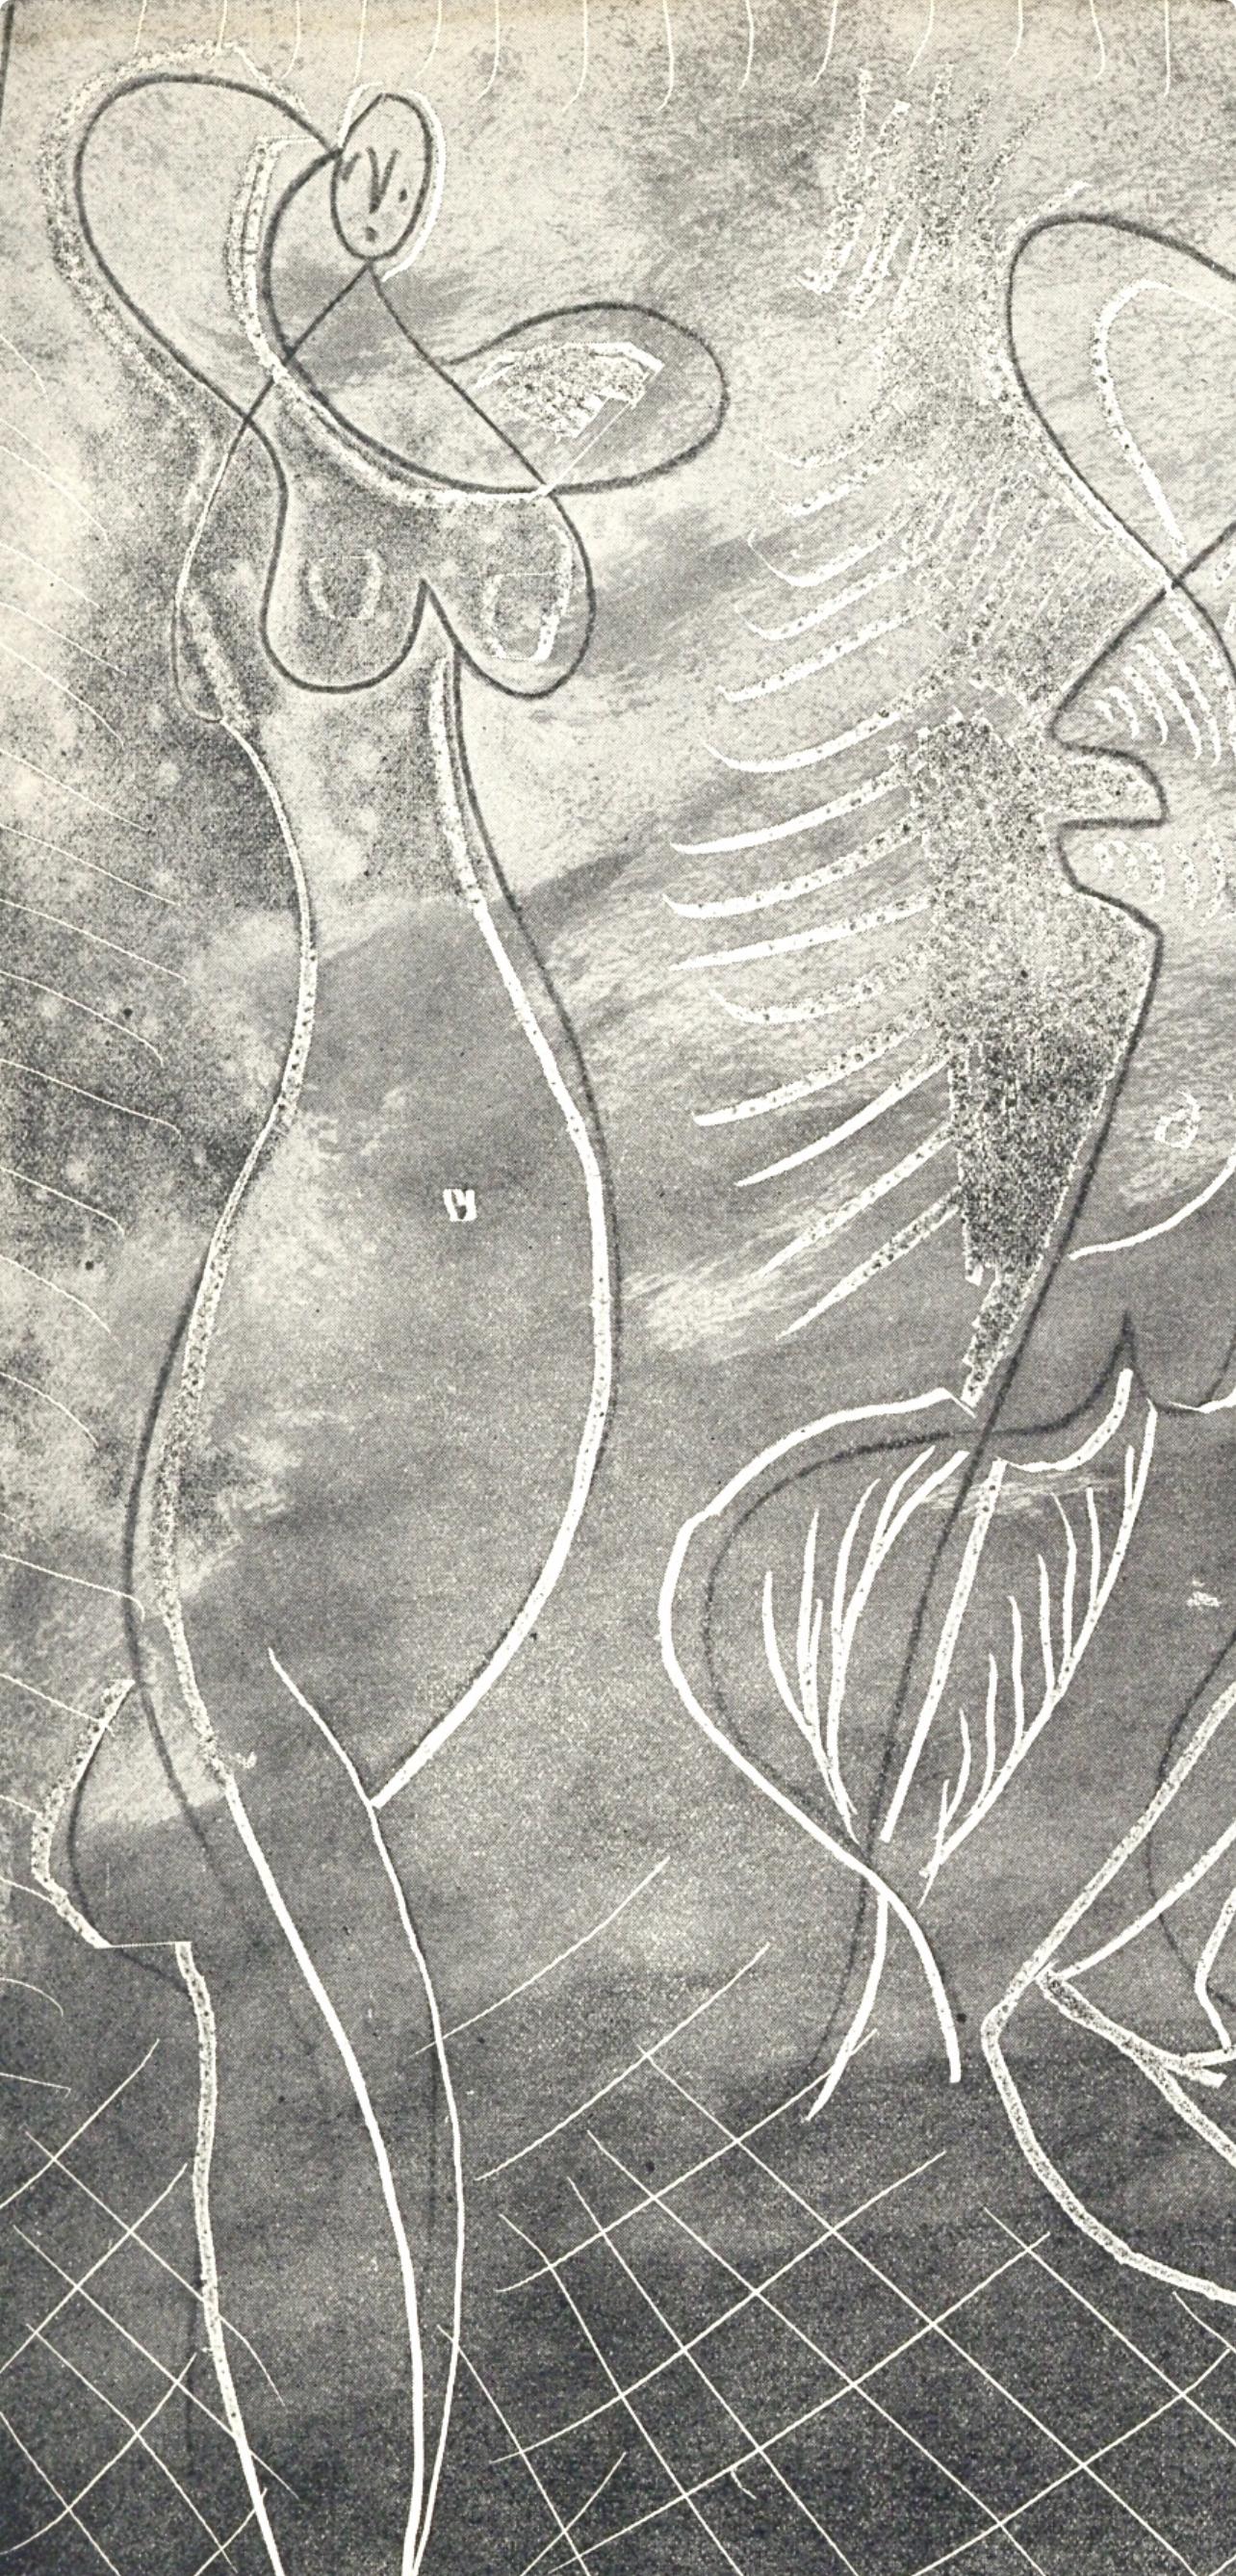 Picasso, Trois baigneuses, La Chèvre-Feuille (nach) – Print von Pablo Picasso